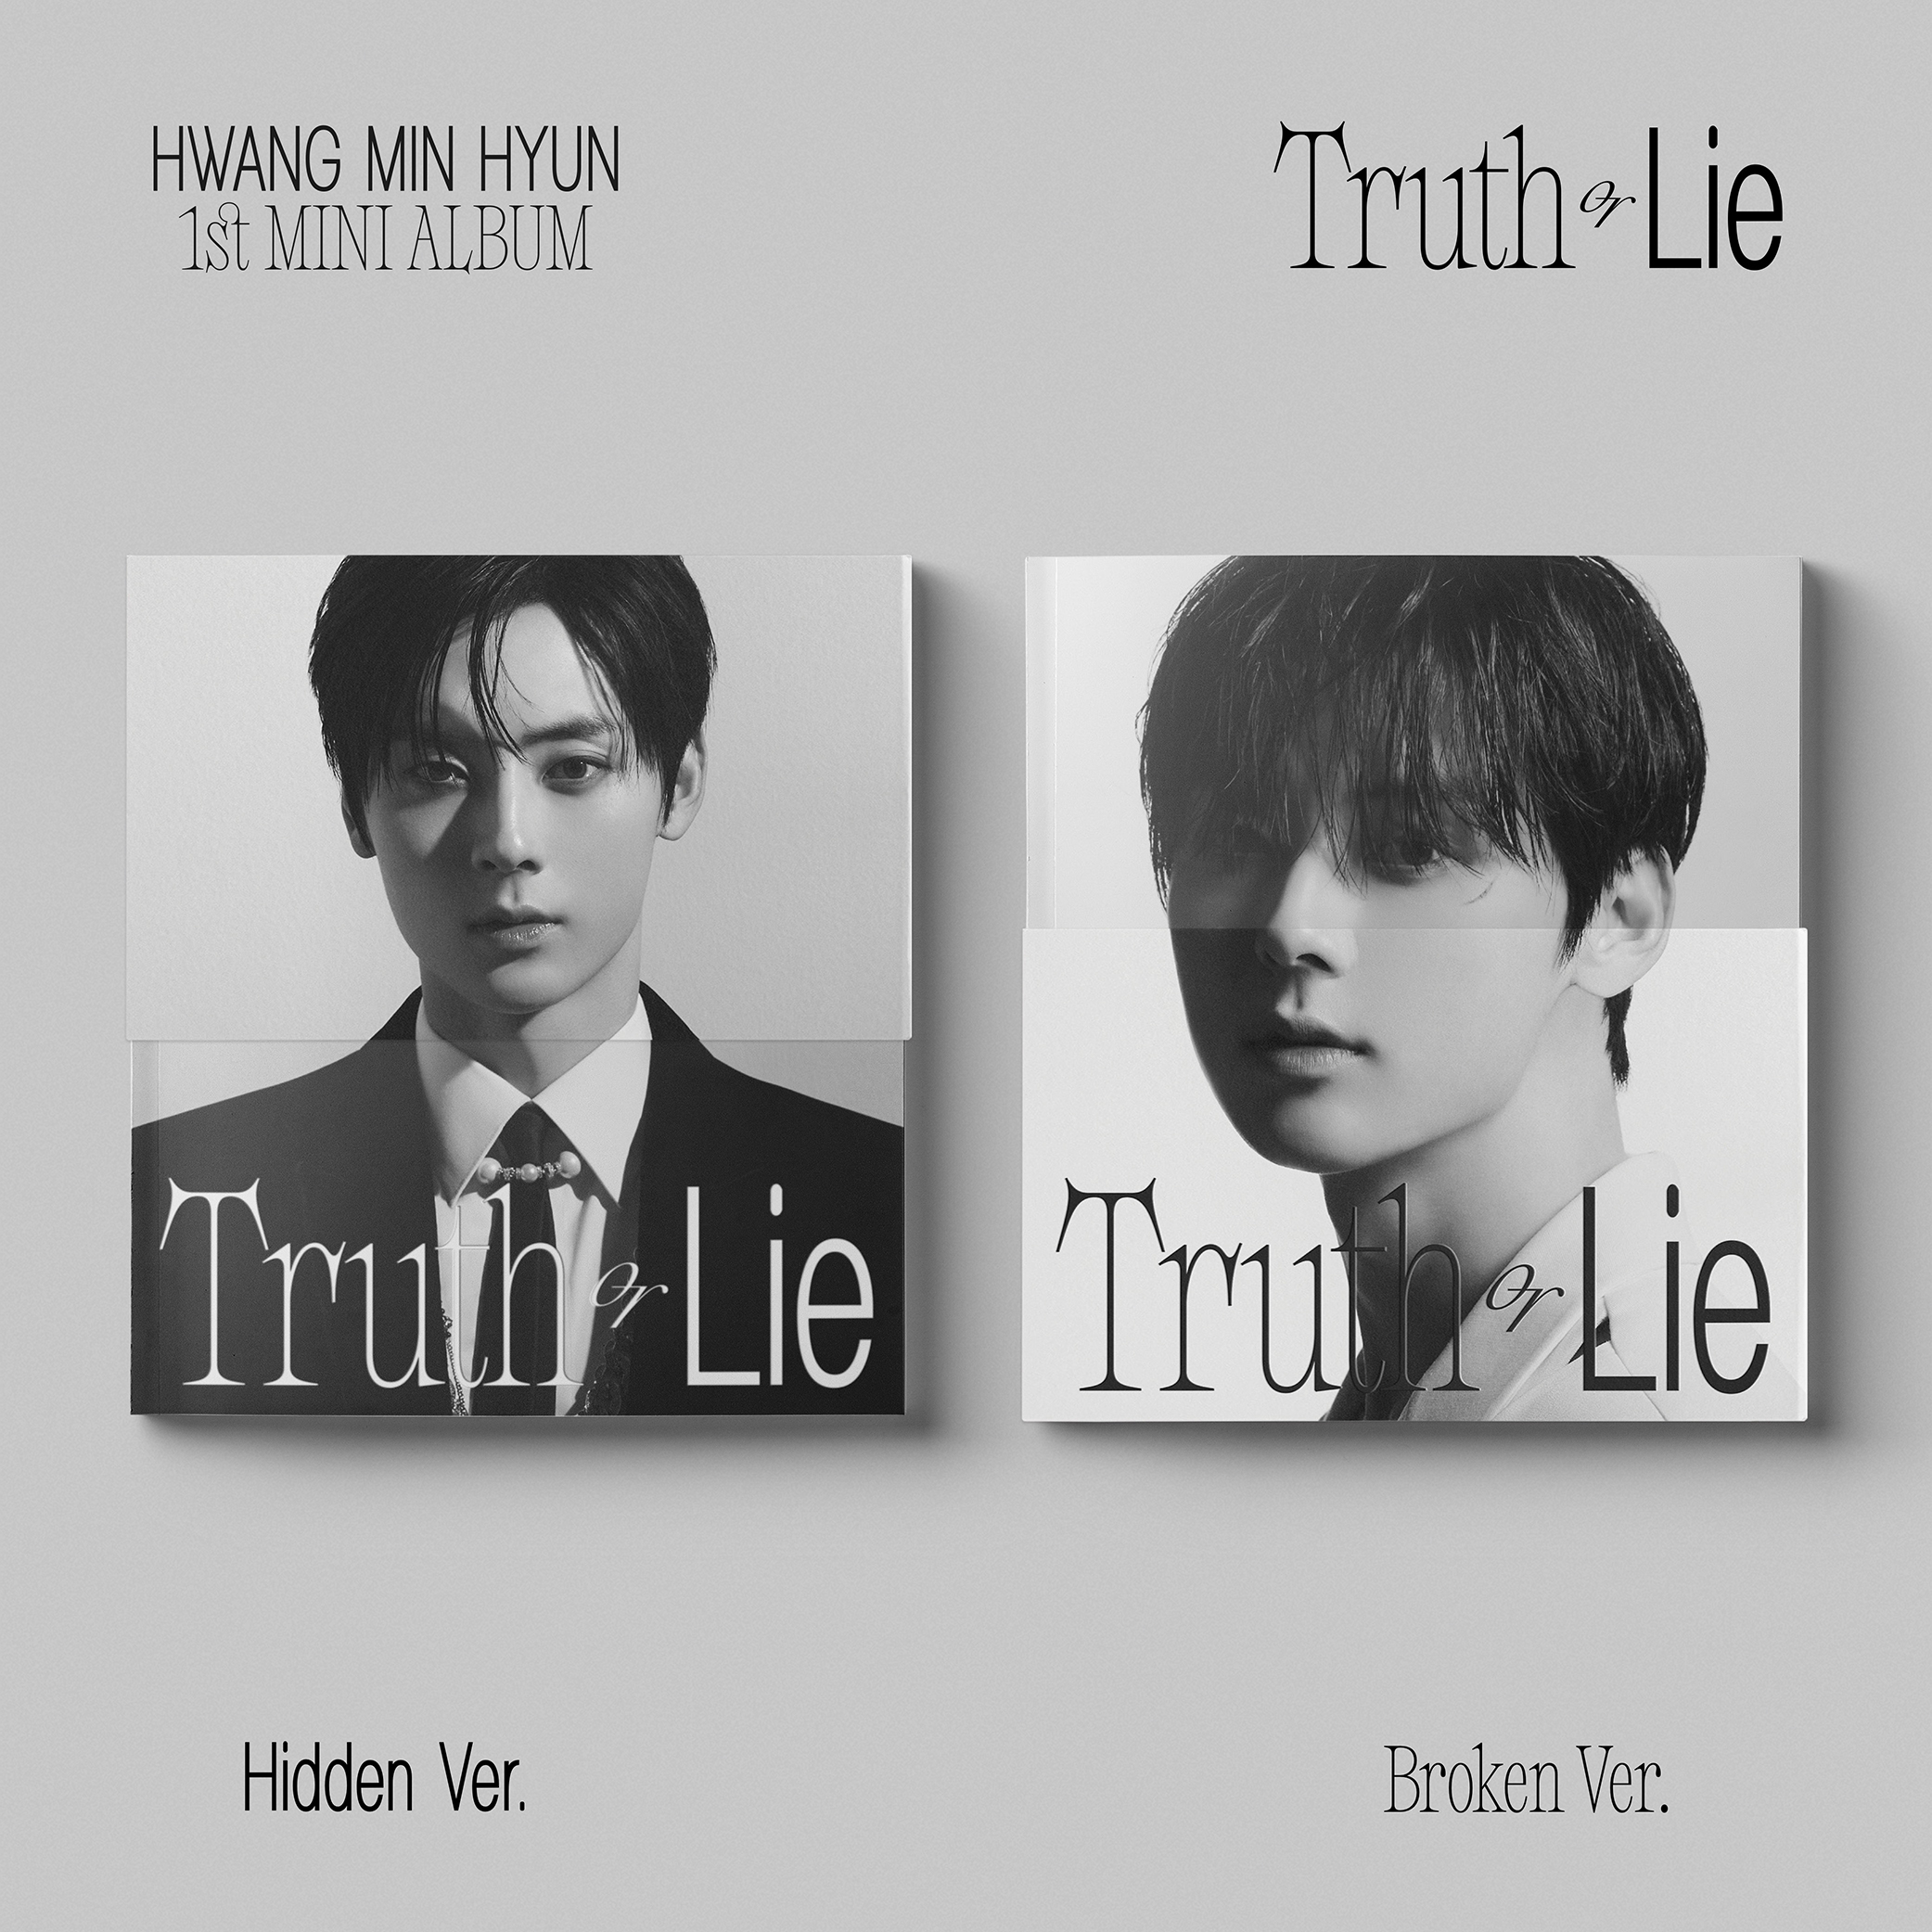 [全款 补贴20元] [Ktown4u Special Gift] [2CD 套装] HWANG MIN HYUN - 迷你1辑 [Truth or Lie] (Hidden Ver. + Broken Ver.) _黄旼炫观星台Observatory89